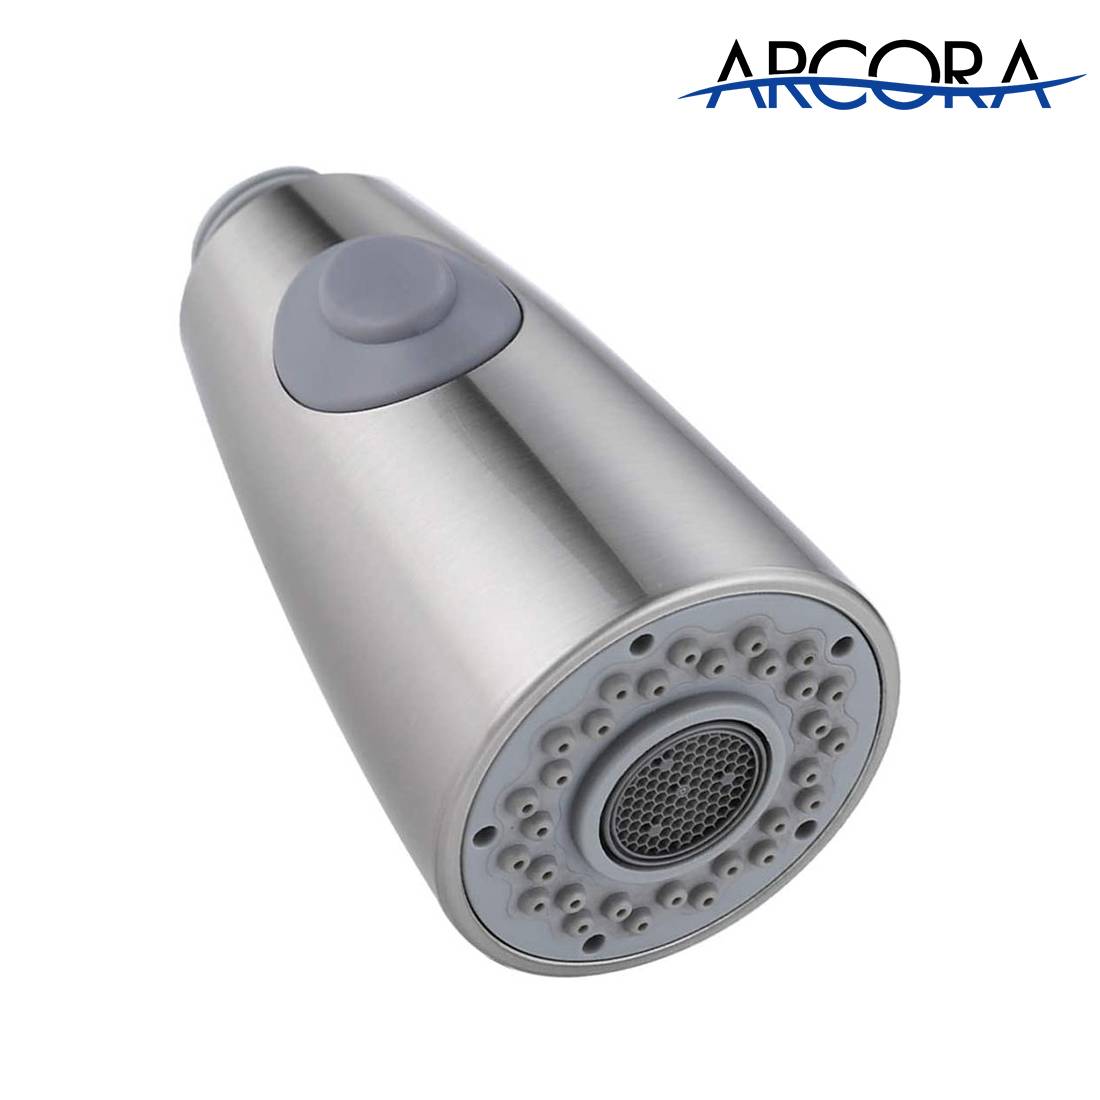 Tête de pulvérisateur de robinet de cuisine ARCORA G1 / 2 nickel brossé